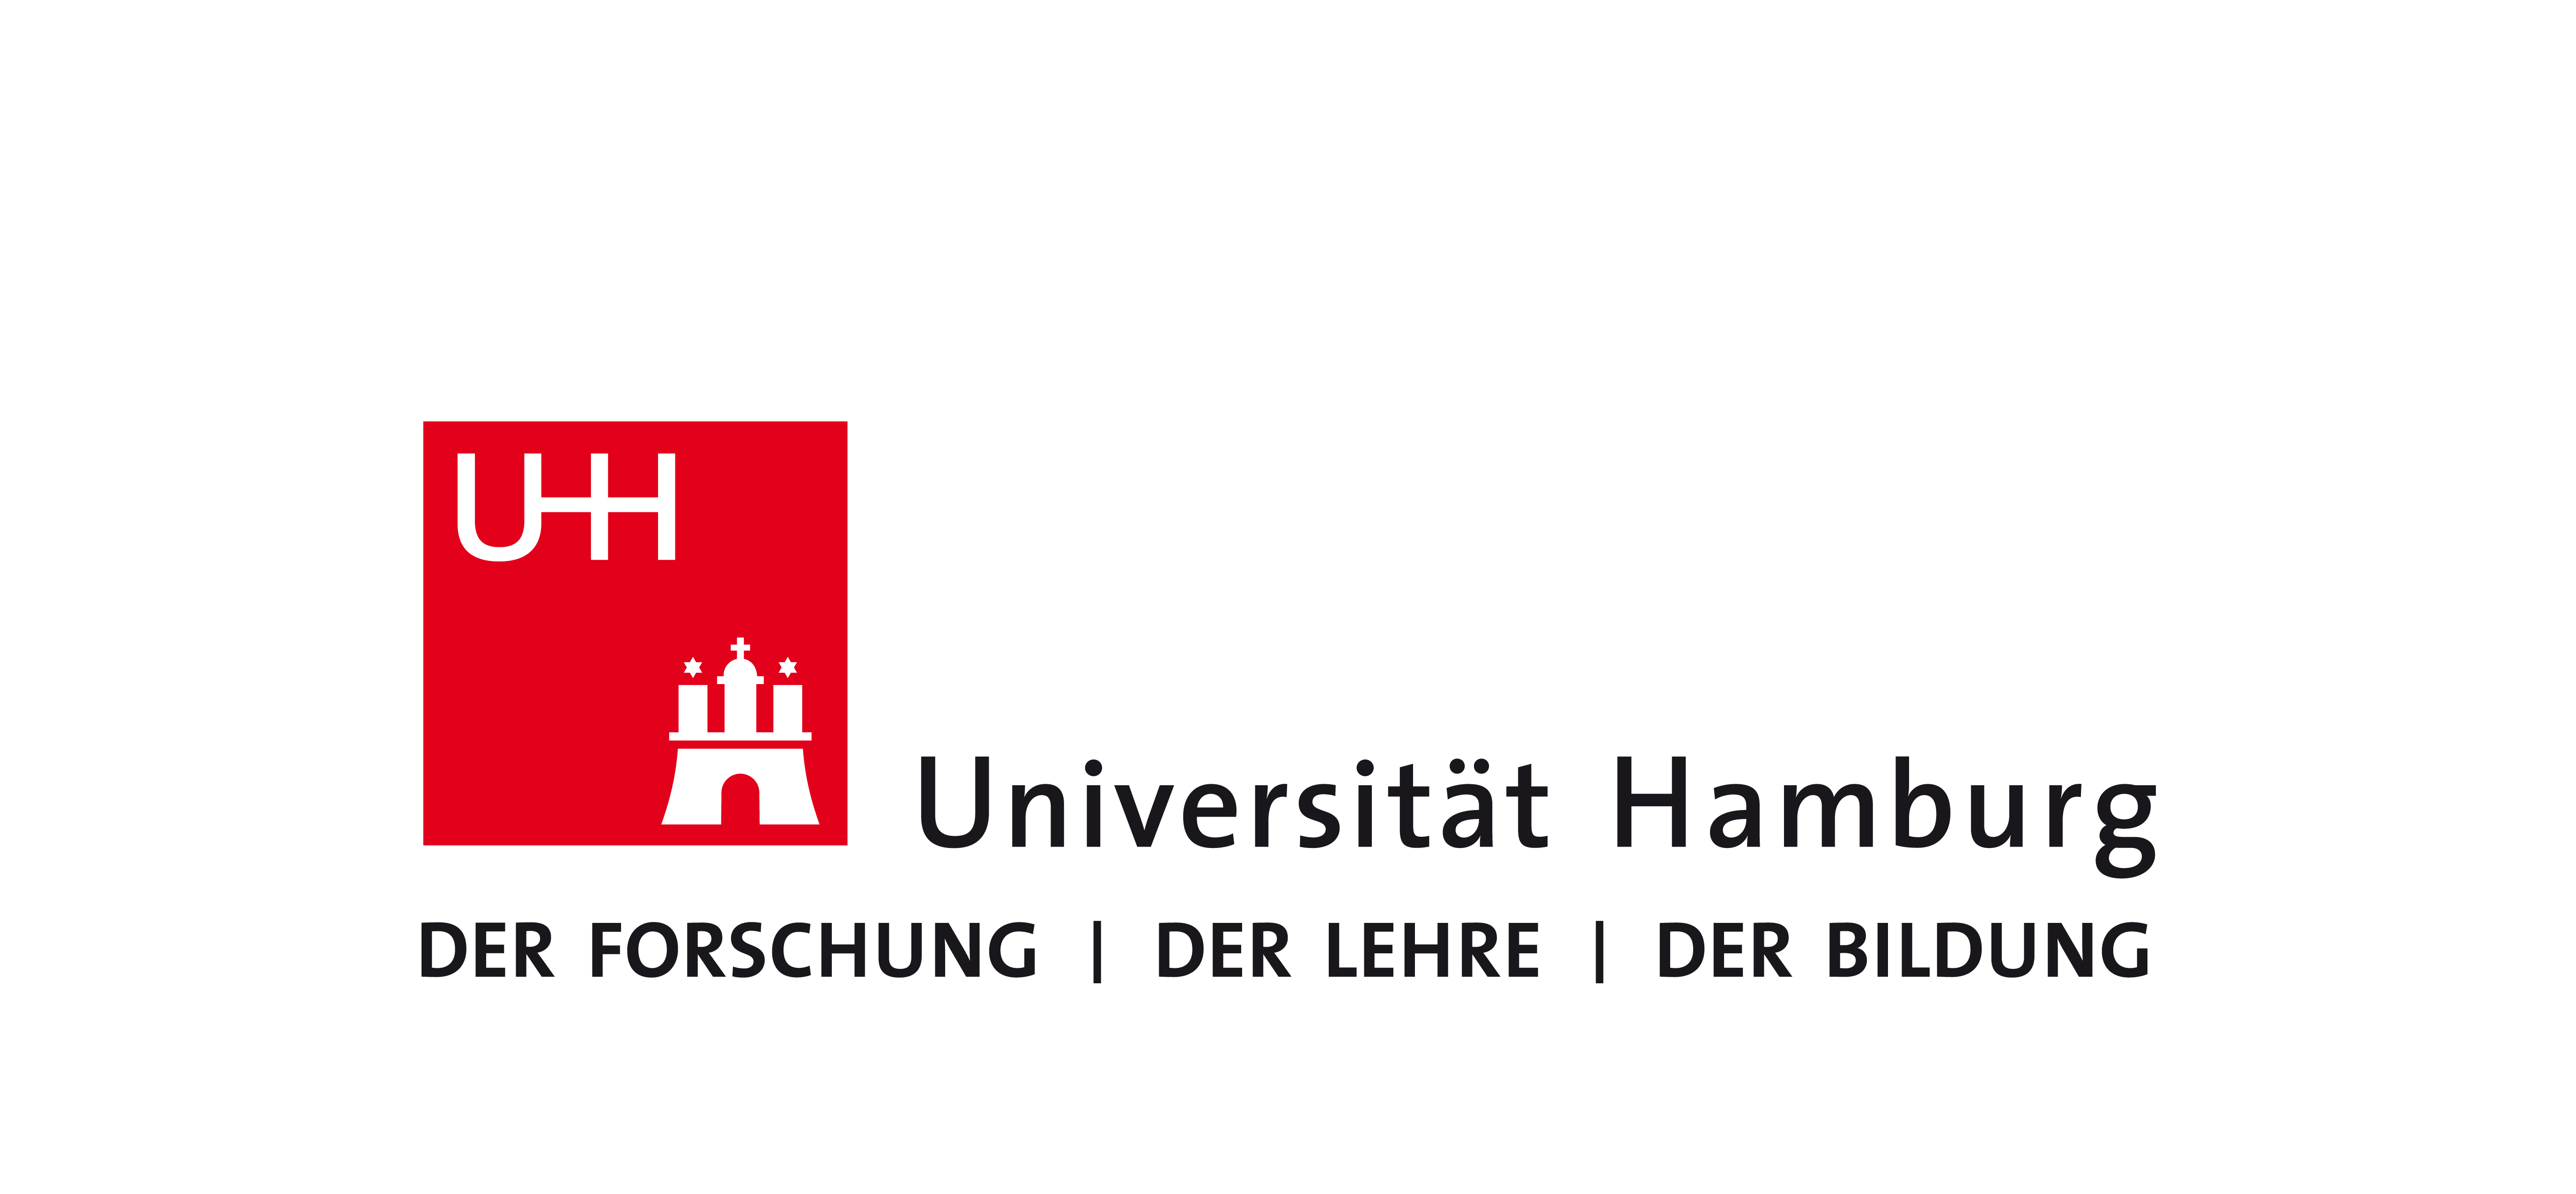 天声人语集萃 汉堡大学是德国 首所经民主表决而成立的高等学府: 1919